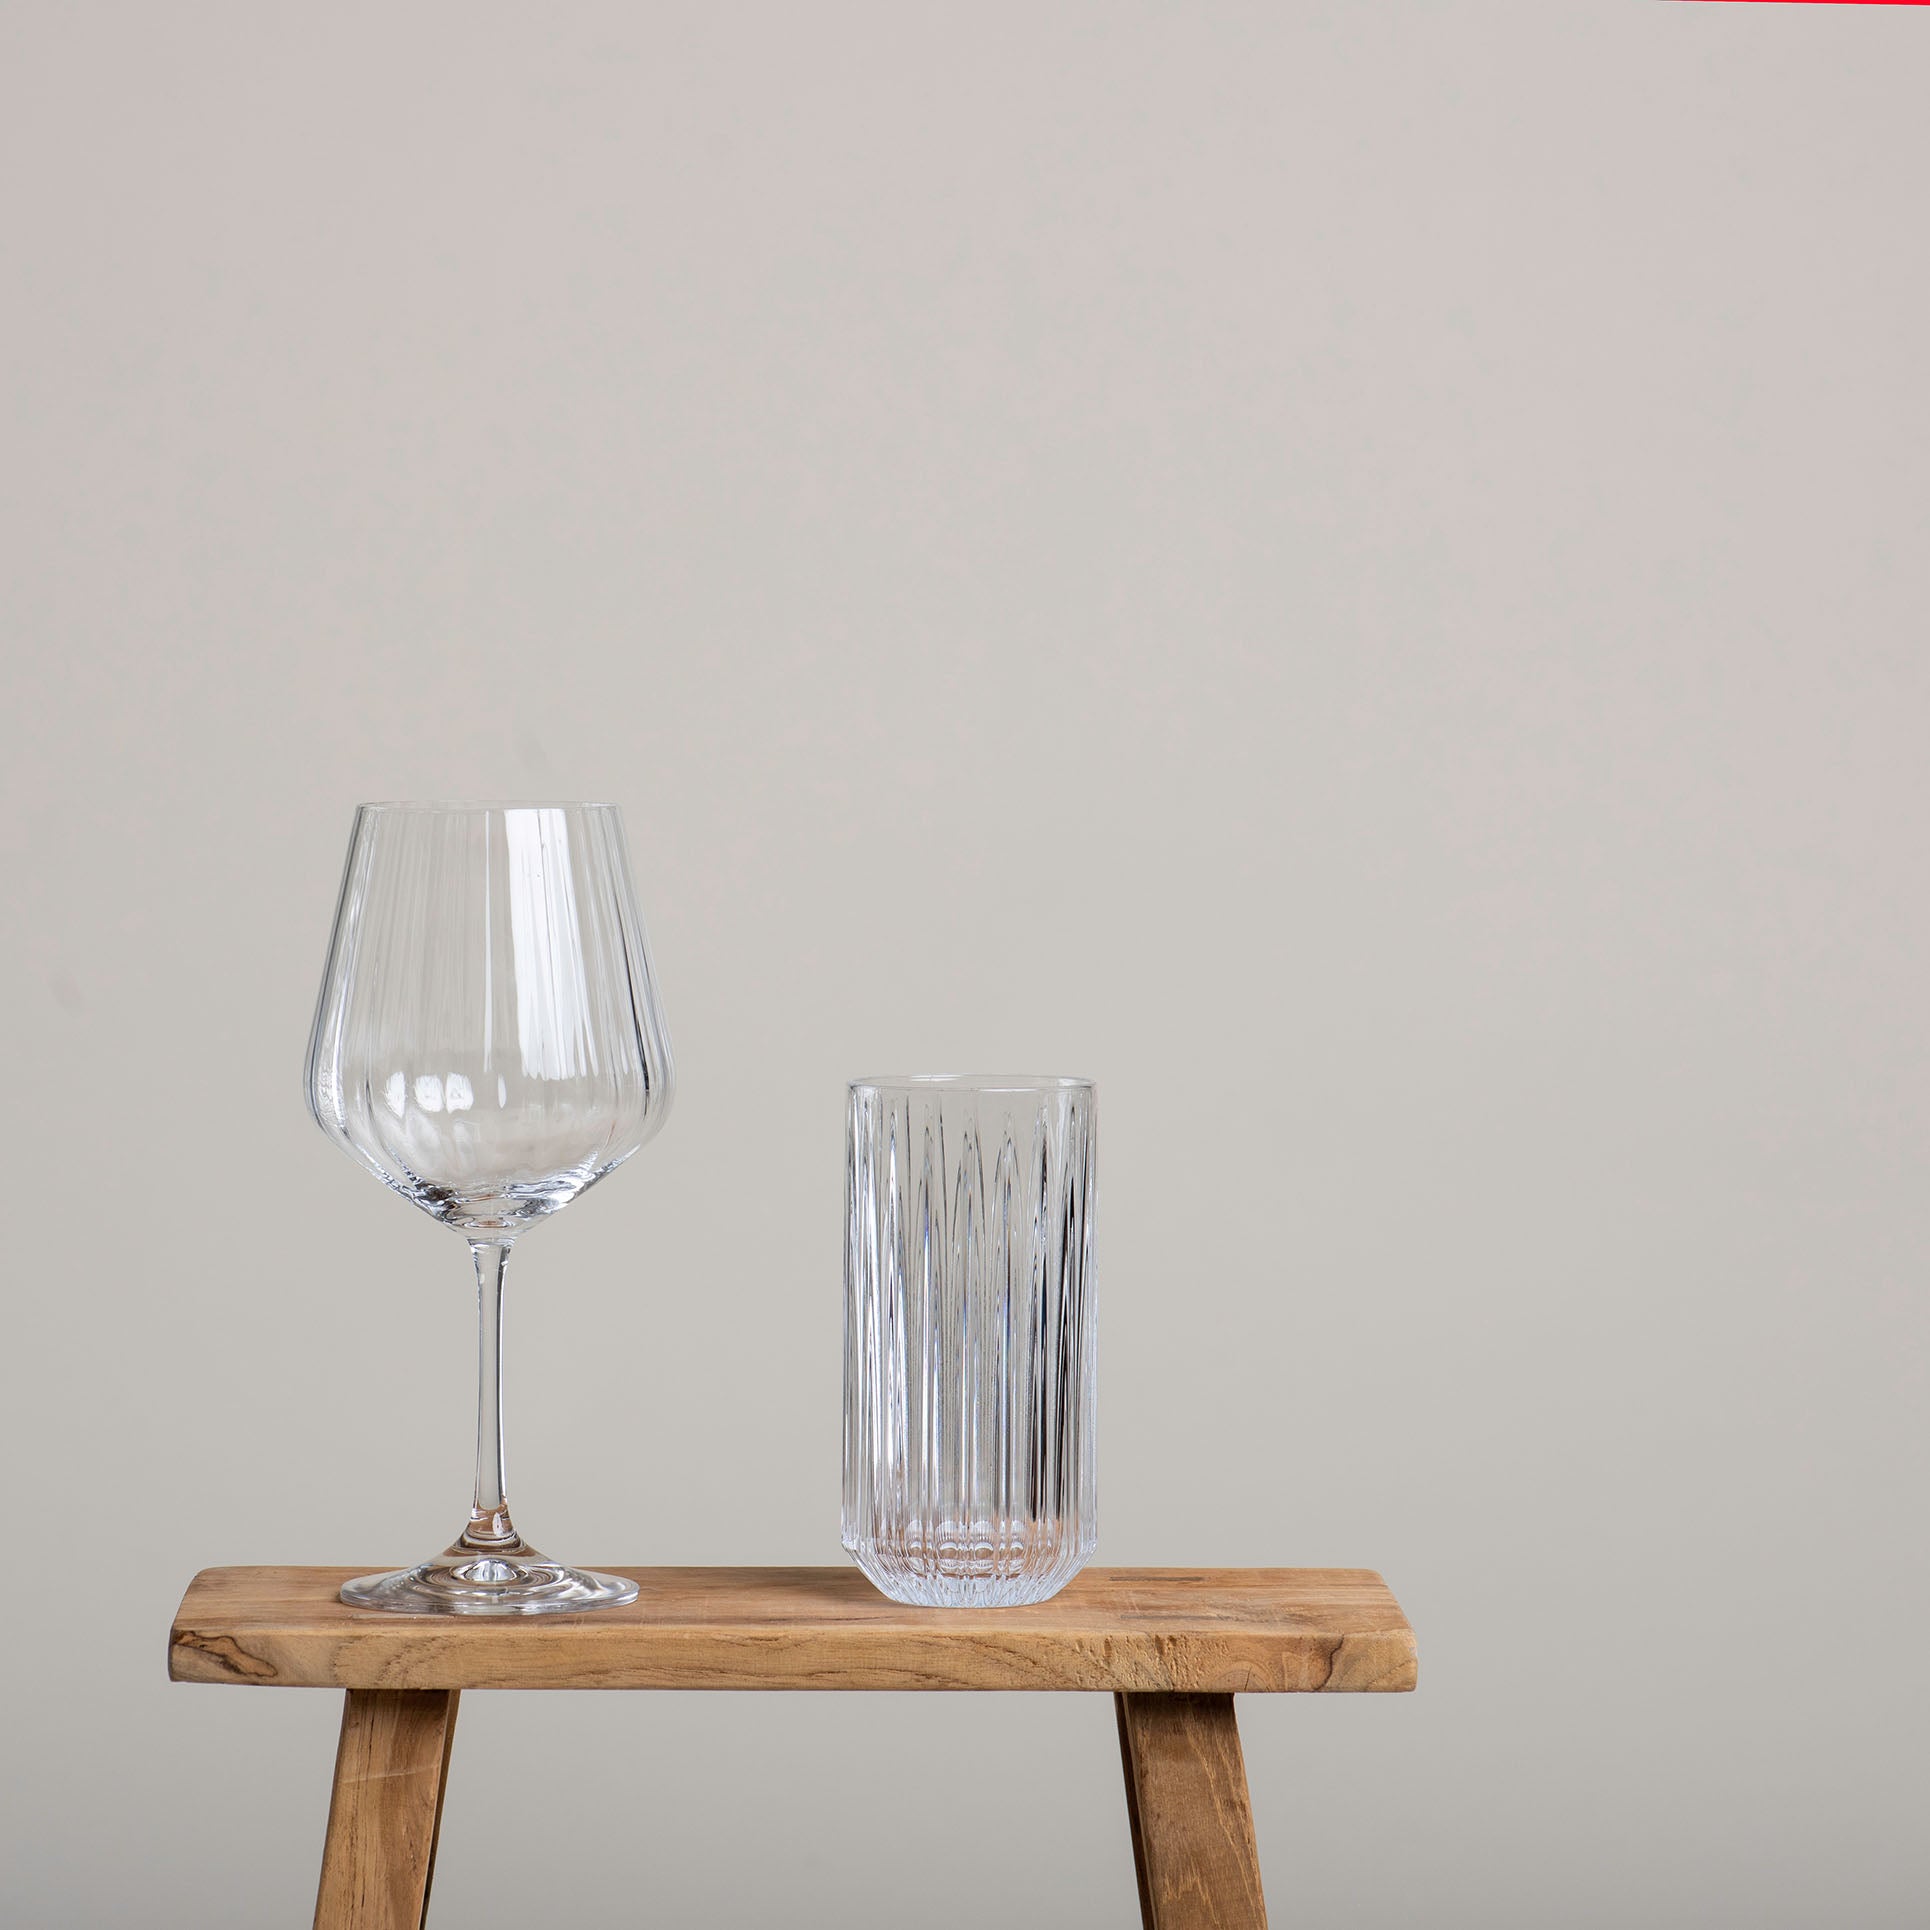 Gin und Tonic Glas aus Kristallglas mit einem Volumen von 640 ml neben einem weiteren Trinkglas. Das Glas hat eine erhöhte Bruchfestigkeit und ist spülmaschinengeeignet.